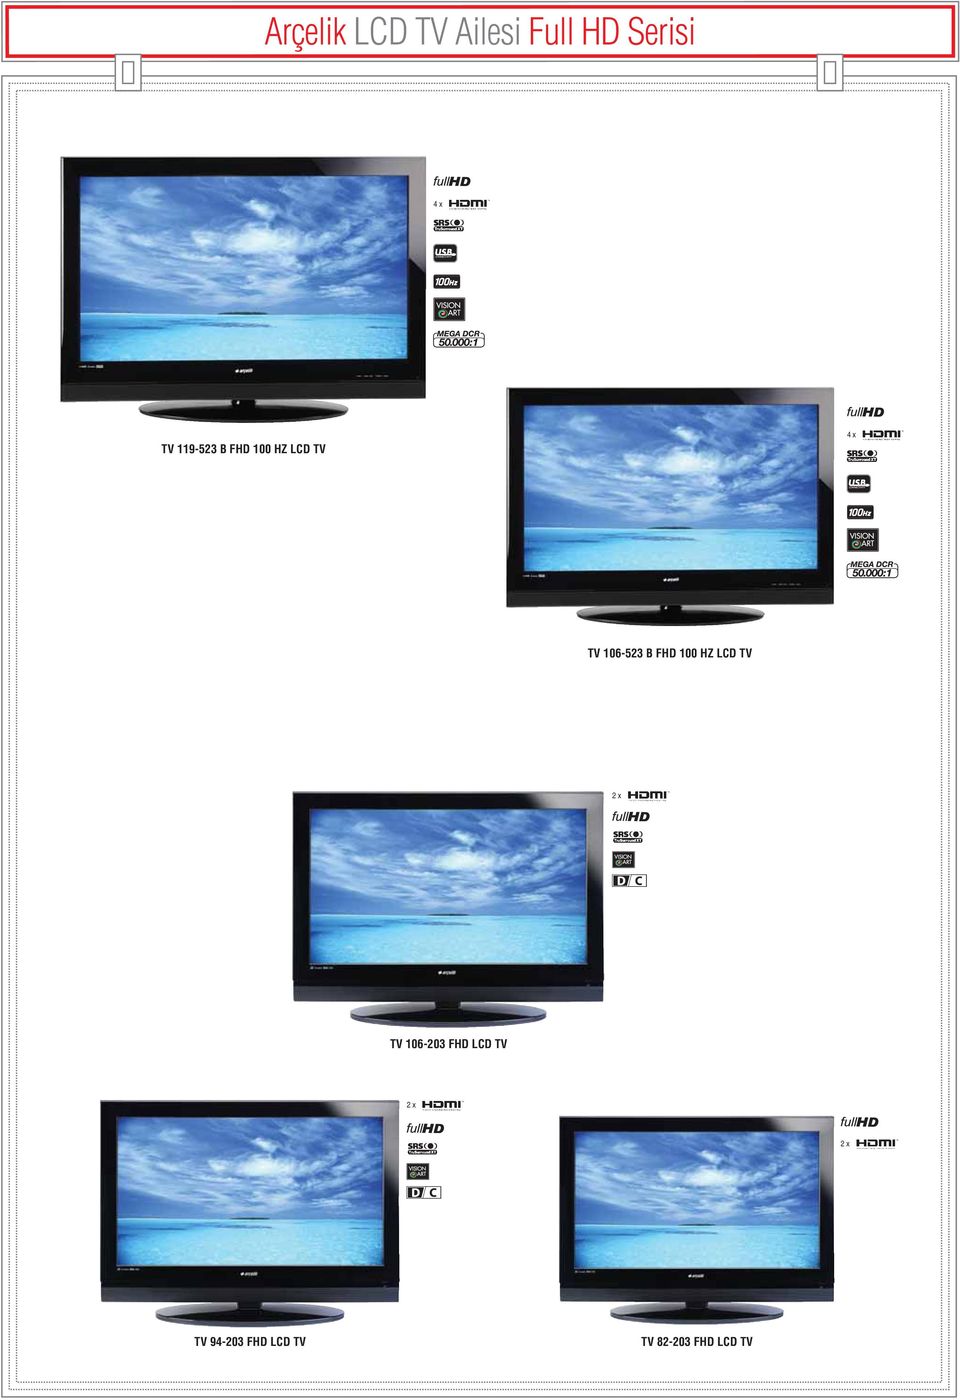 FHD 100 HZ LCD TV 2 x TV 106-203 FHD LCD TV 2